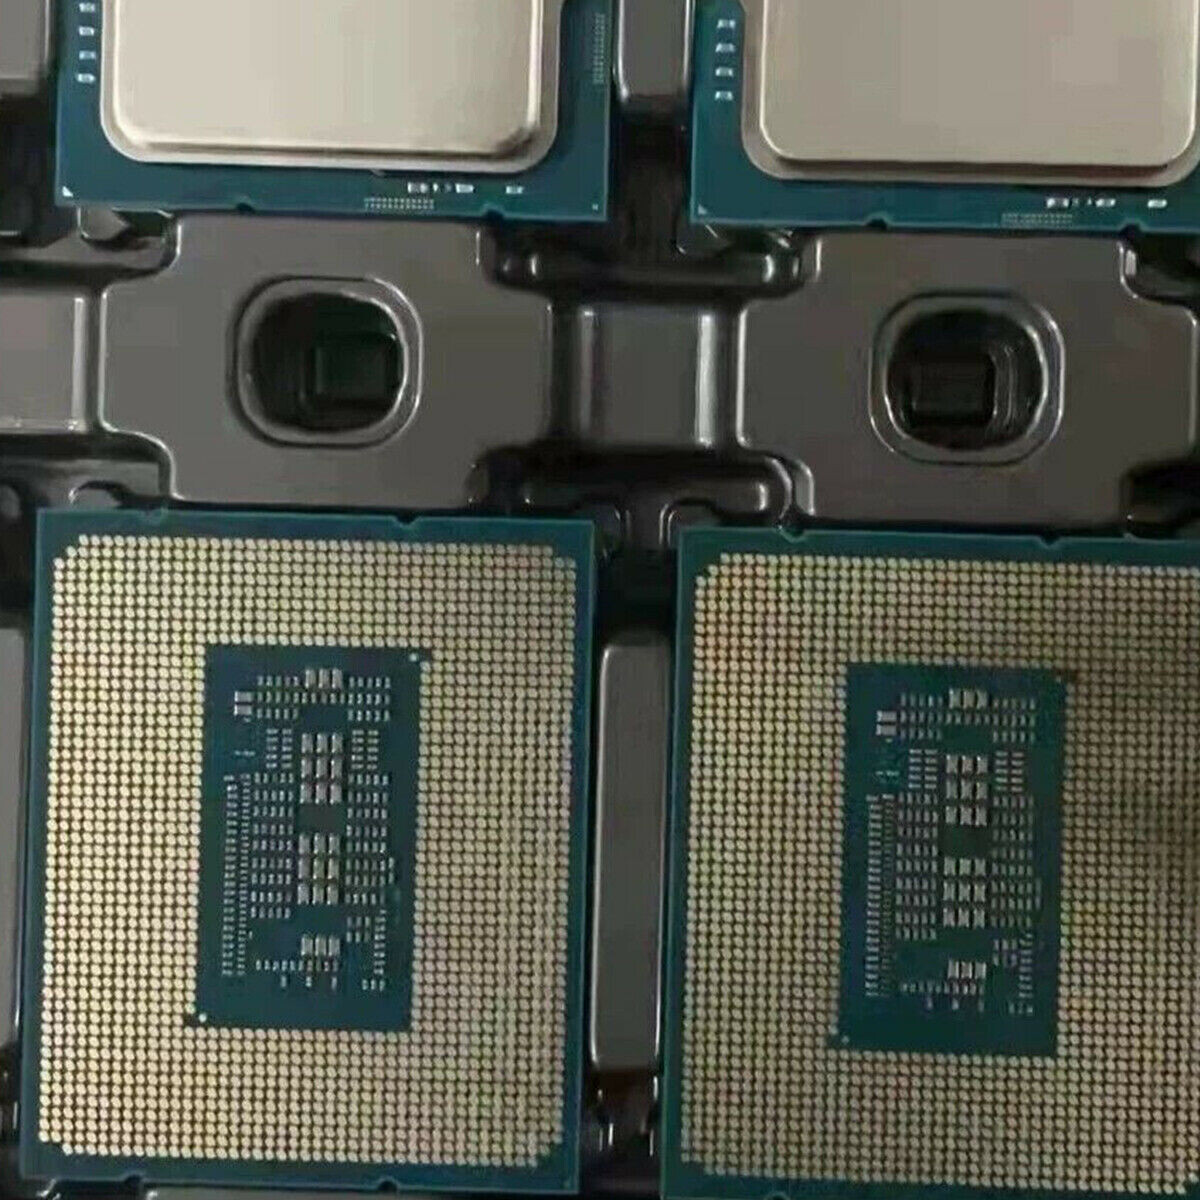 Immagine pubblicata in relazione al seguente contenuto: Alcuni sample engineering della CPU Intel Core i5-12400 in vendita su eBay | Nome immagine: news32684_Intel-Core-i5-12400-Engineering-Sample_2.jpg